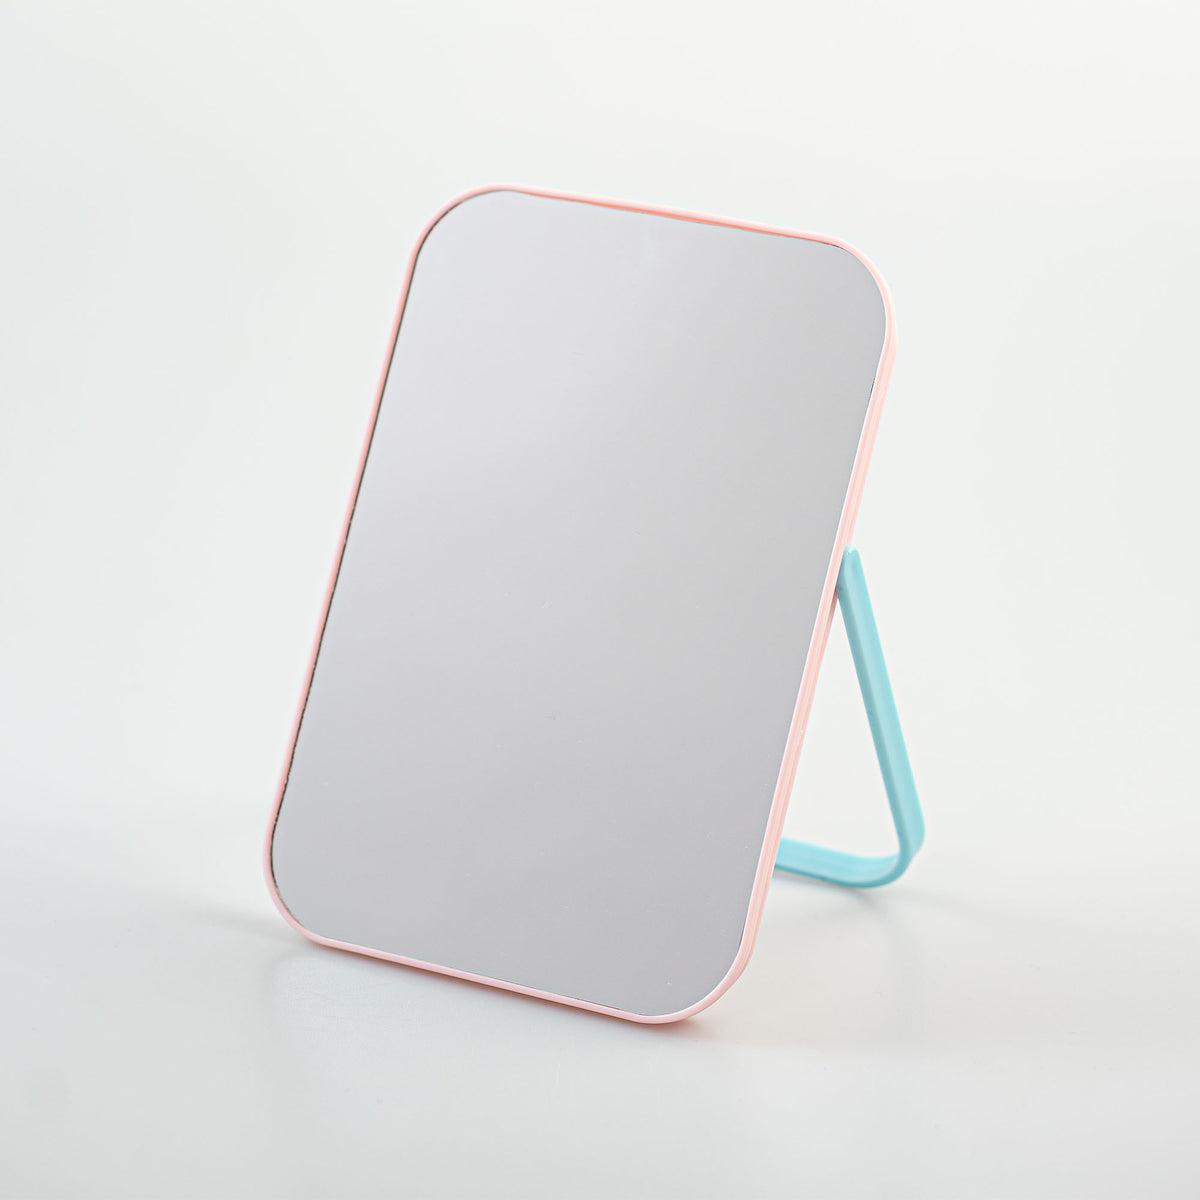 Specchio da tavola minimal bianco miniso accessori lifestyle rosa